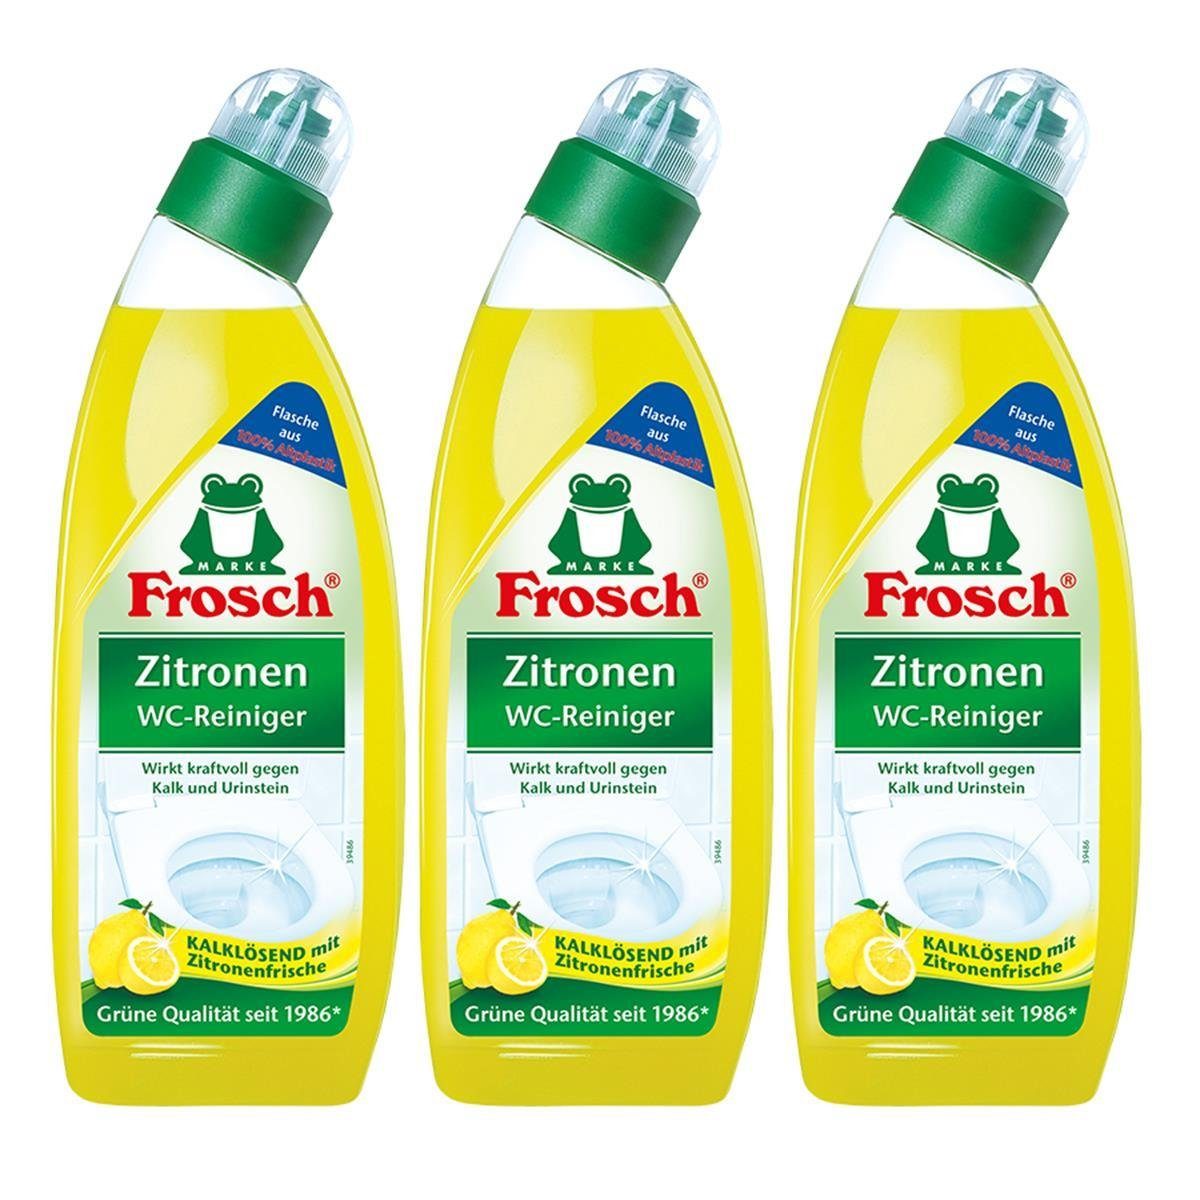 FROSCH 3x Frosch - Kalklösend 750 mit WC-Reiniger WC-Reiniger ml Zitrone Zitronen